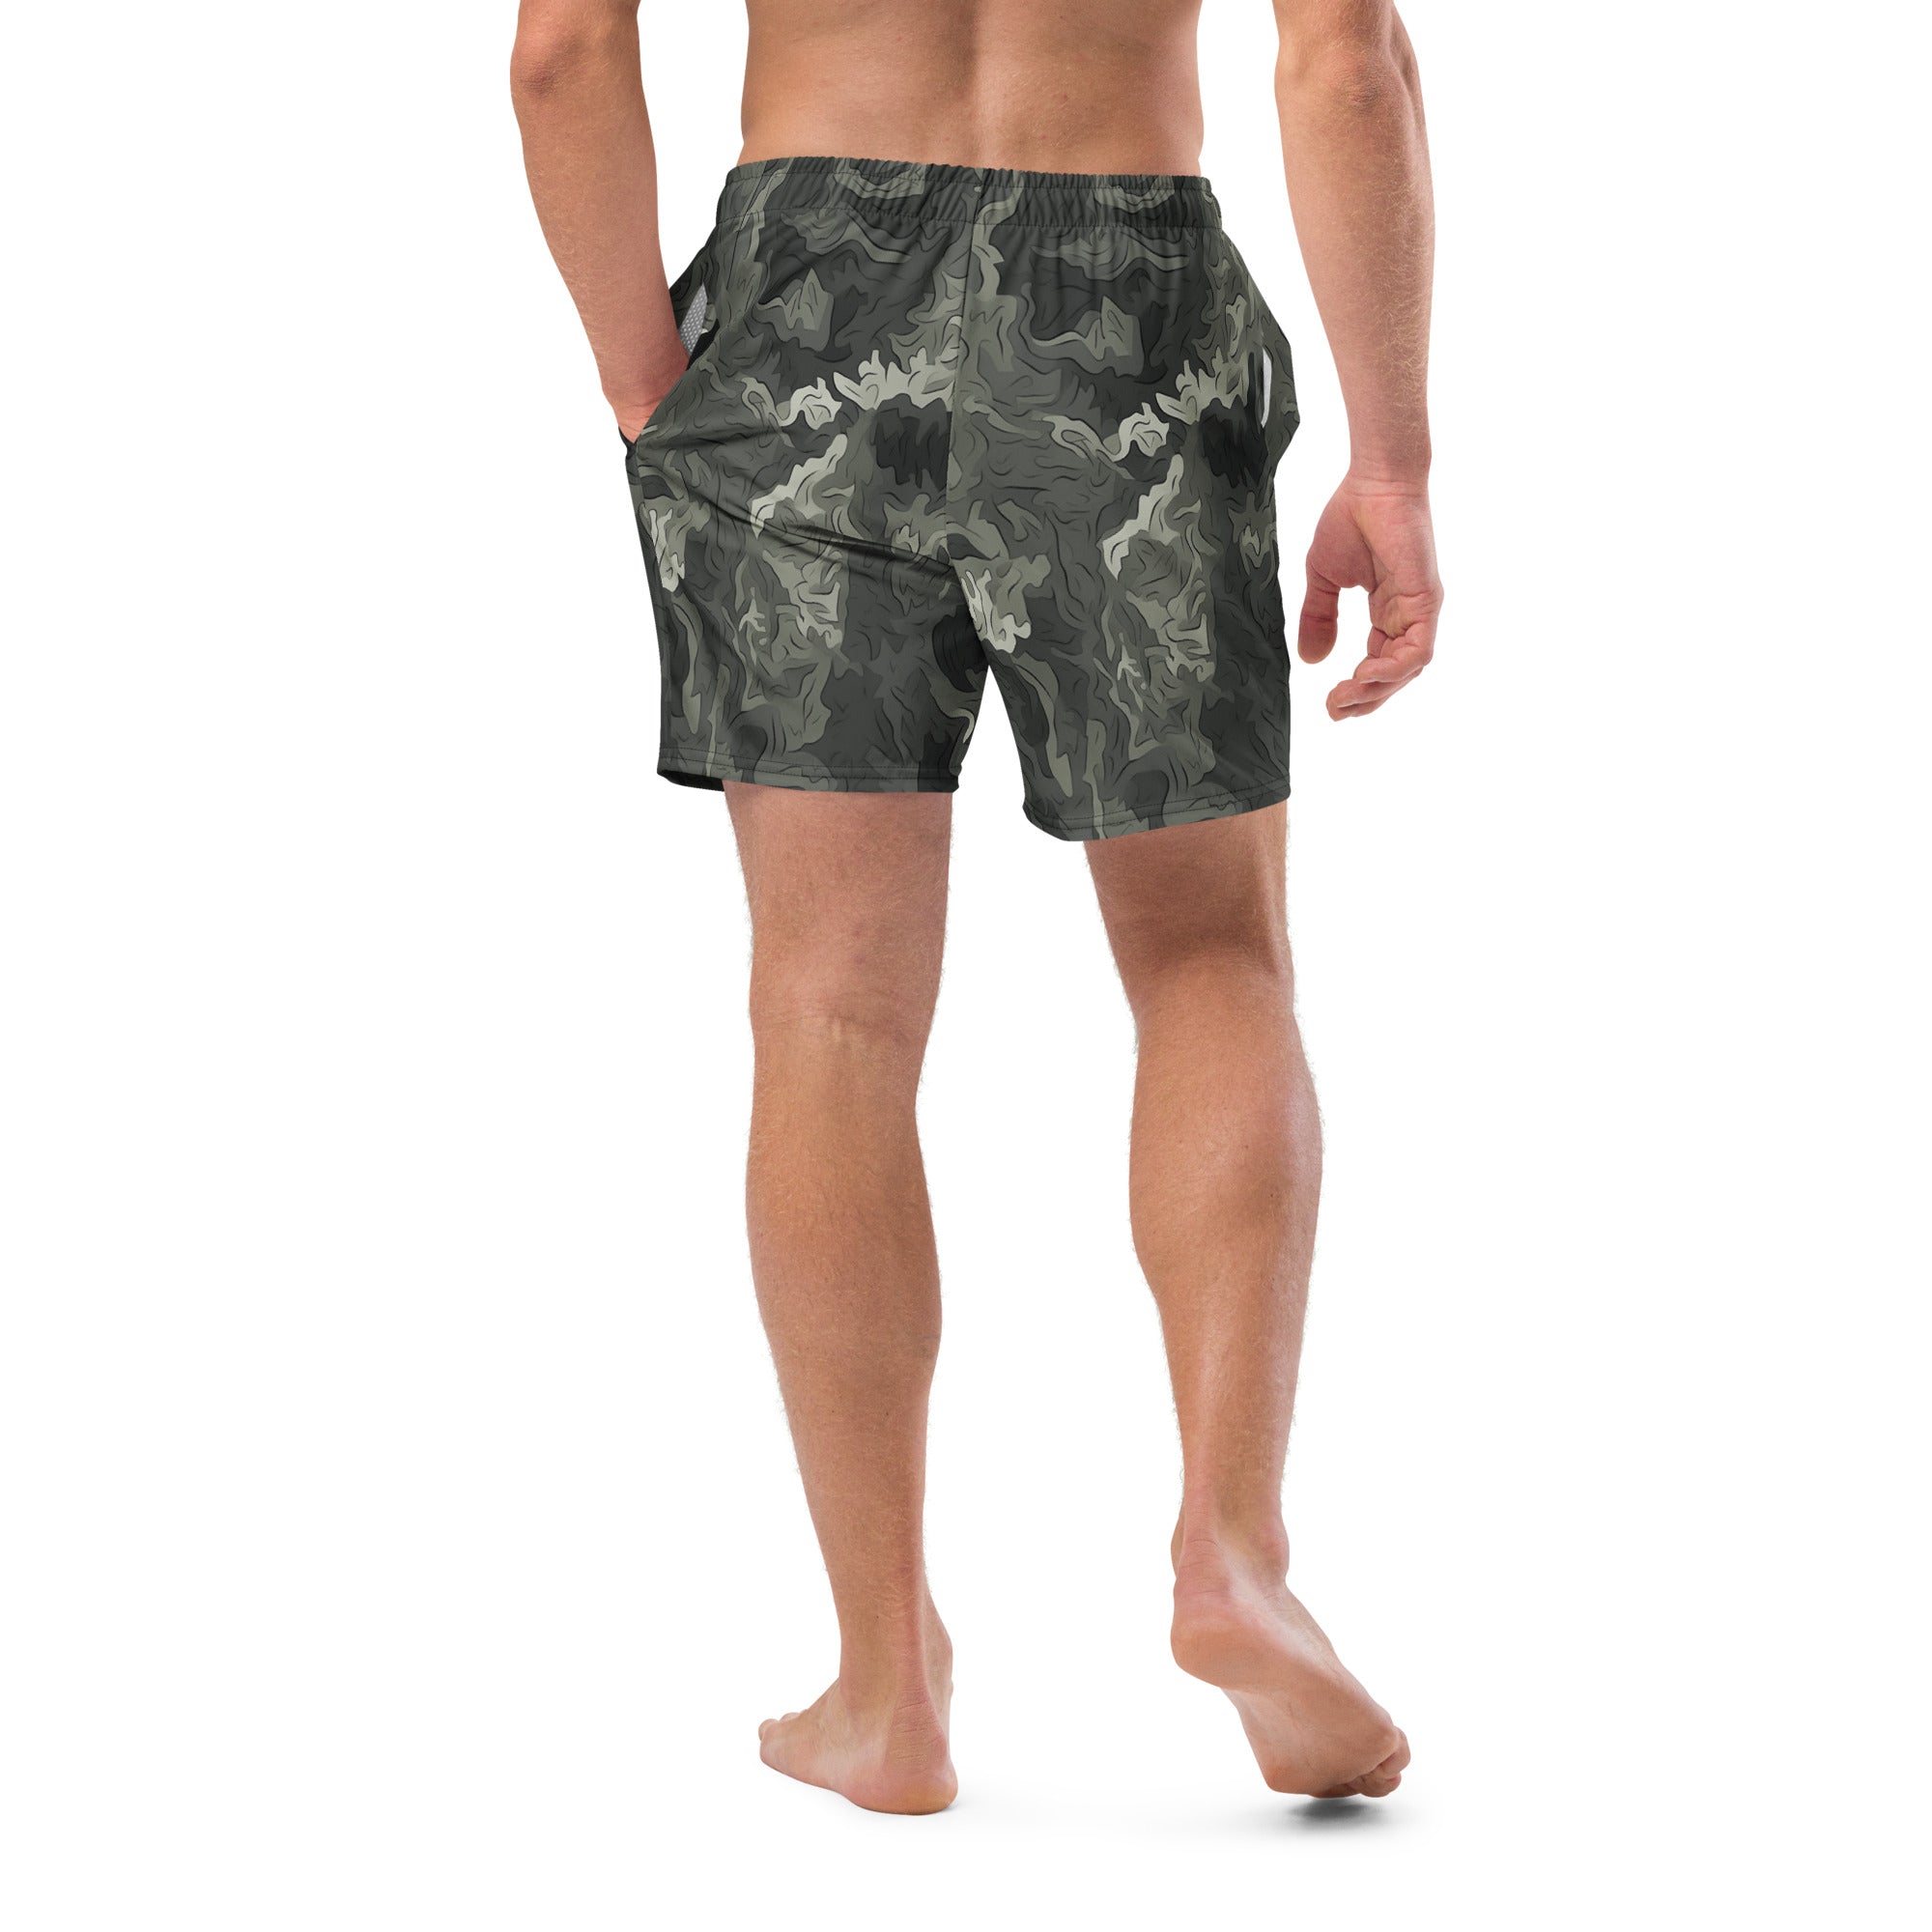 Greyzone Organic Woodland Camouflage Men's Swim Trunks